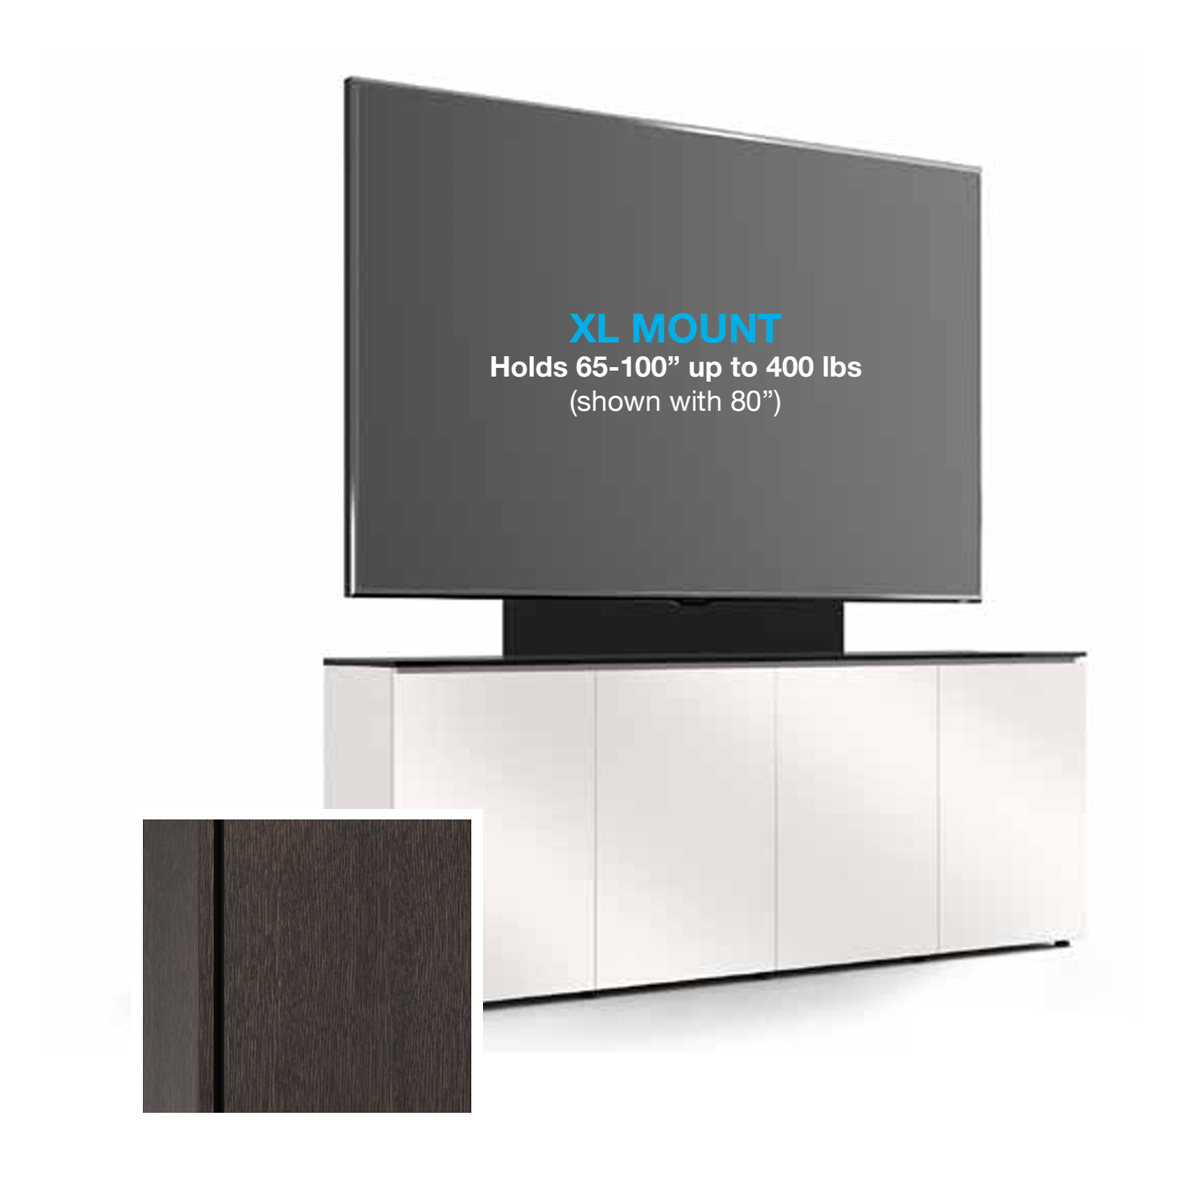 D1/347AMXL/SN/WO 4 Bay, Single XL Monitor Low-Profile, Wall Cabinet, Siena /Wenge Oak